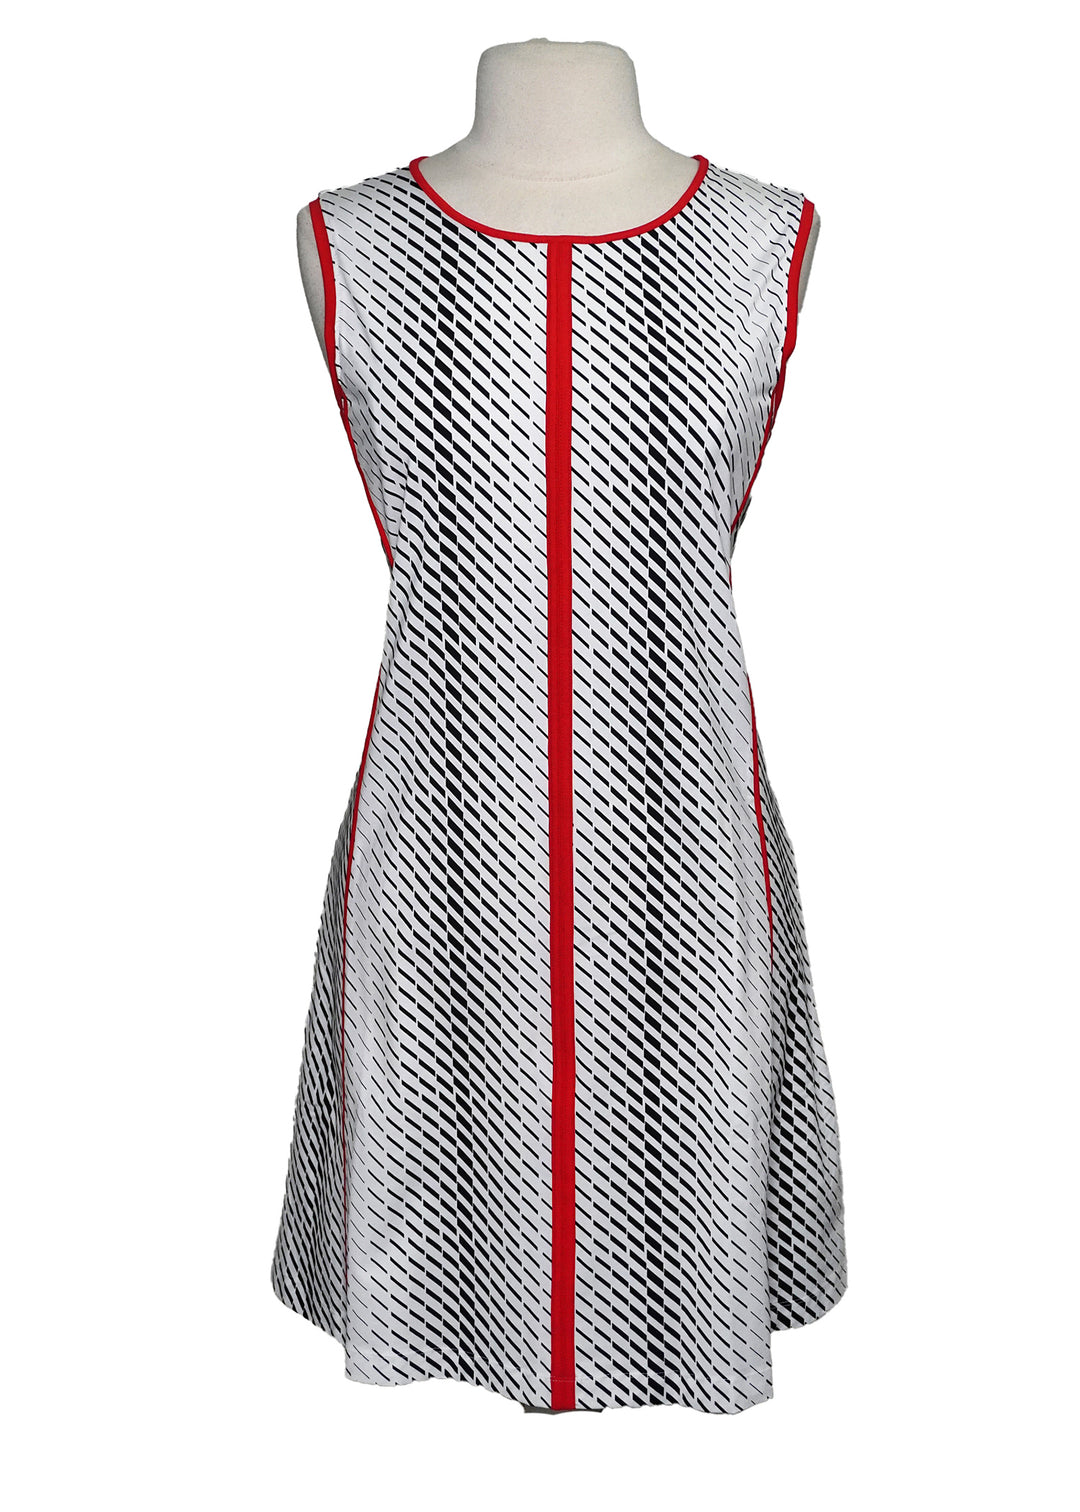 Kinona Sleeveless Golf Dress - White  -  Size Large - Skorzie